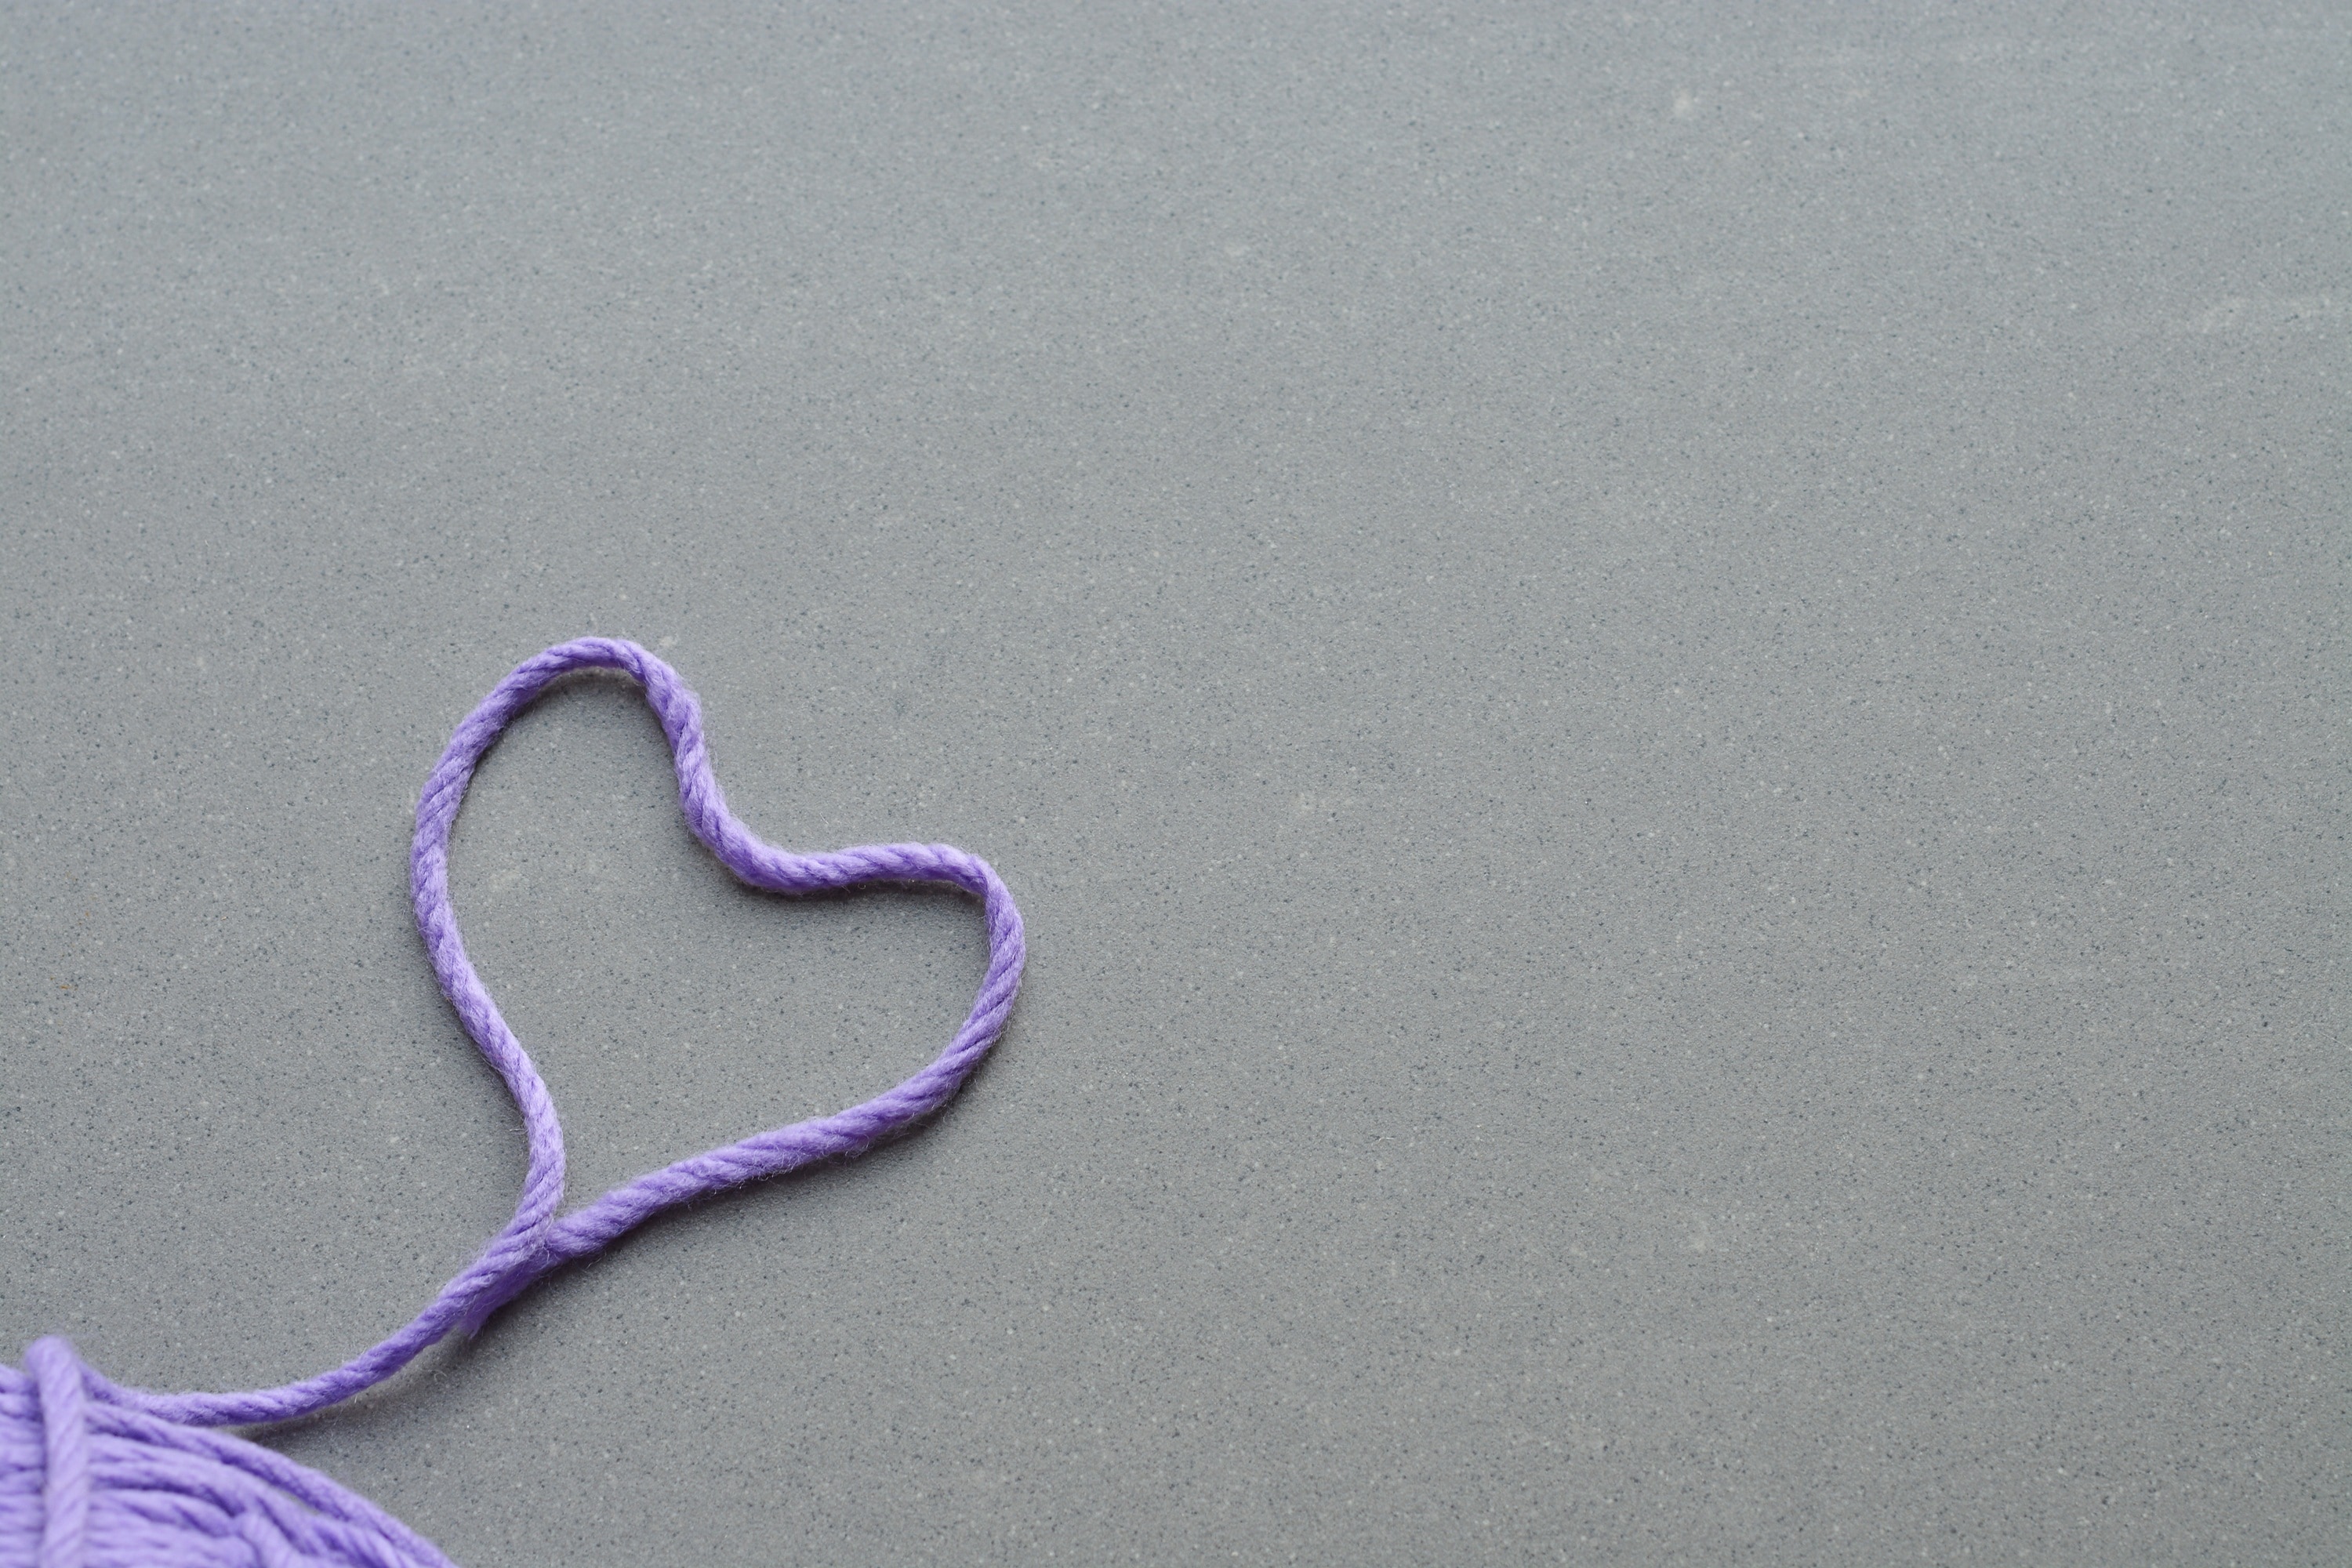 purple rope shaped in heart